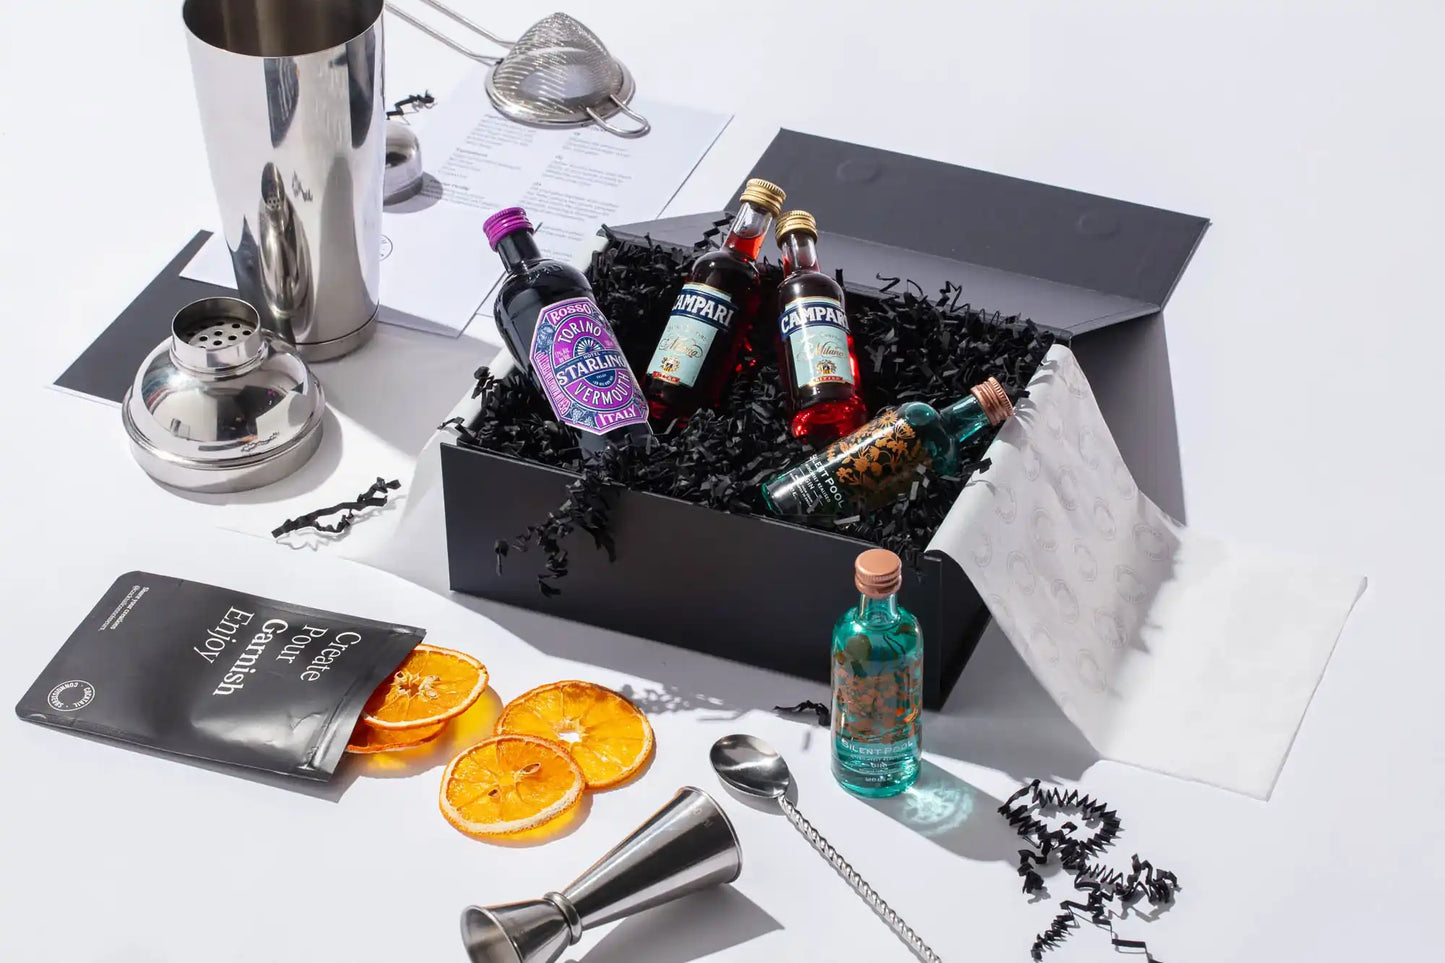 Negroni cocktail kit gift set with beginner bar equipment